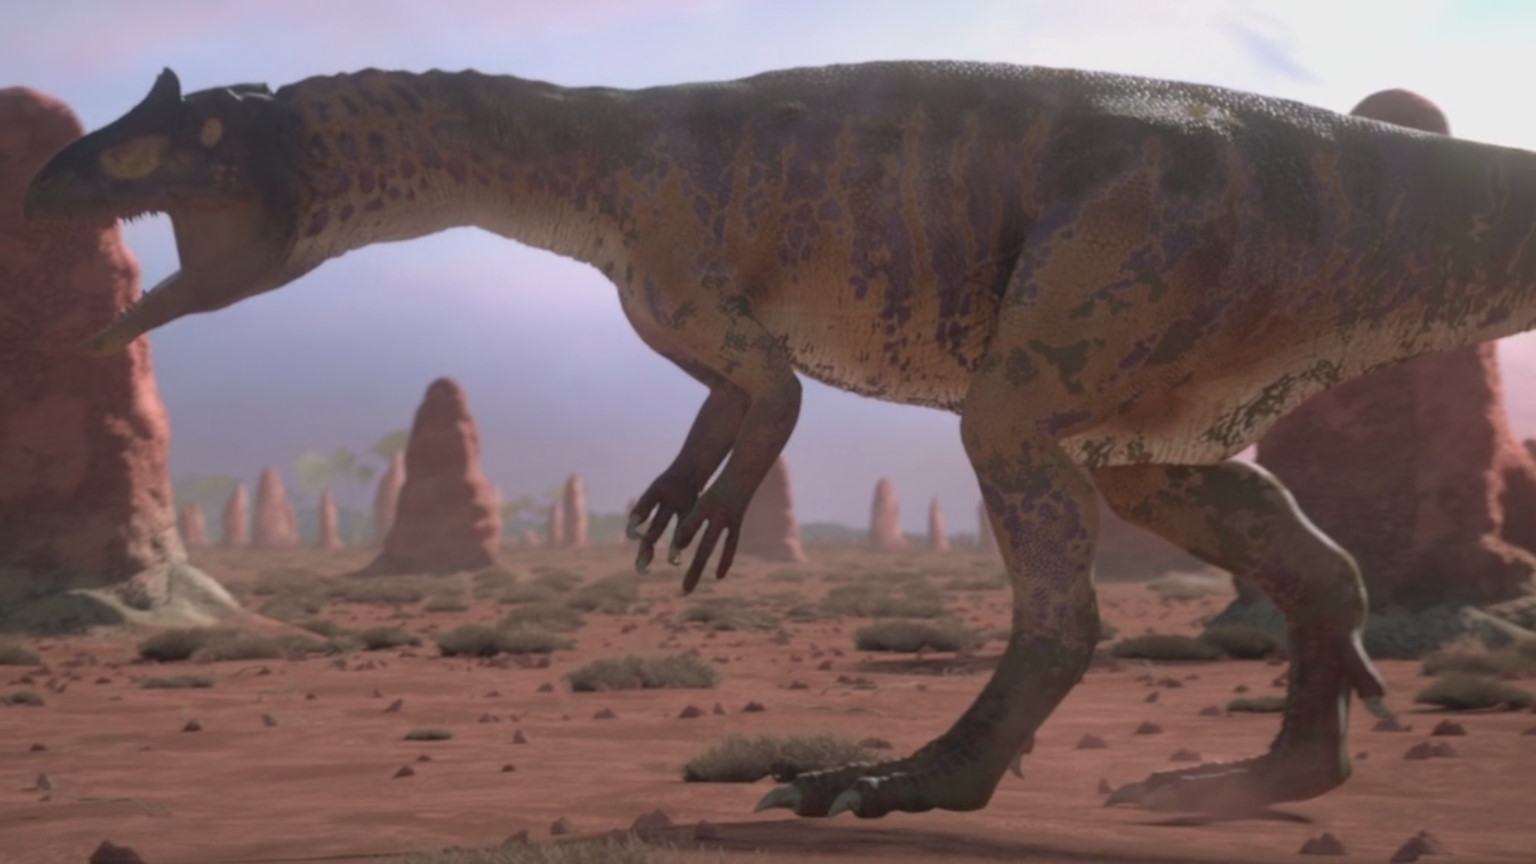 Заурофаганакс, динозавр заурофаганакс